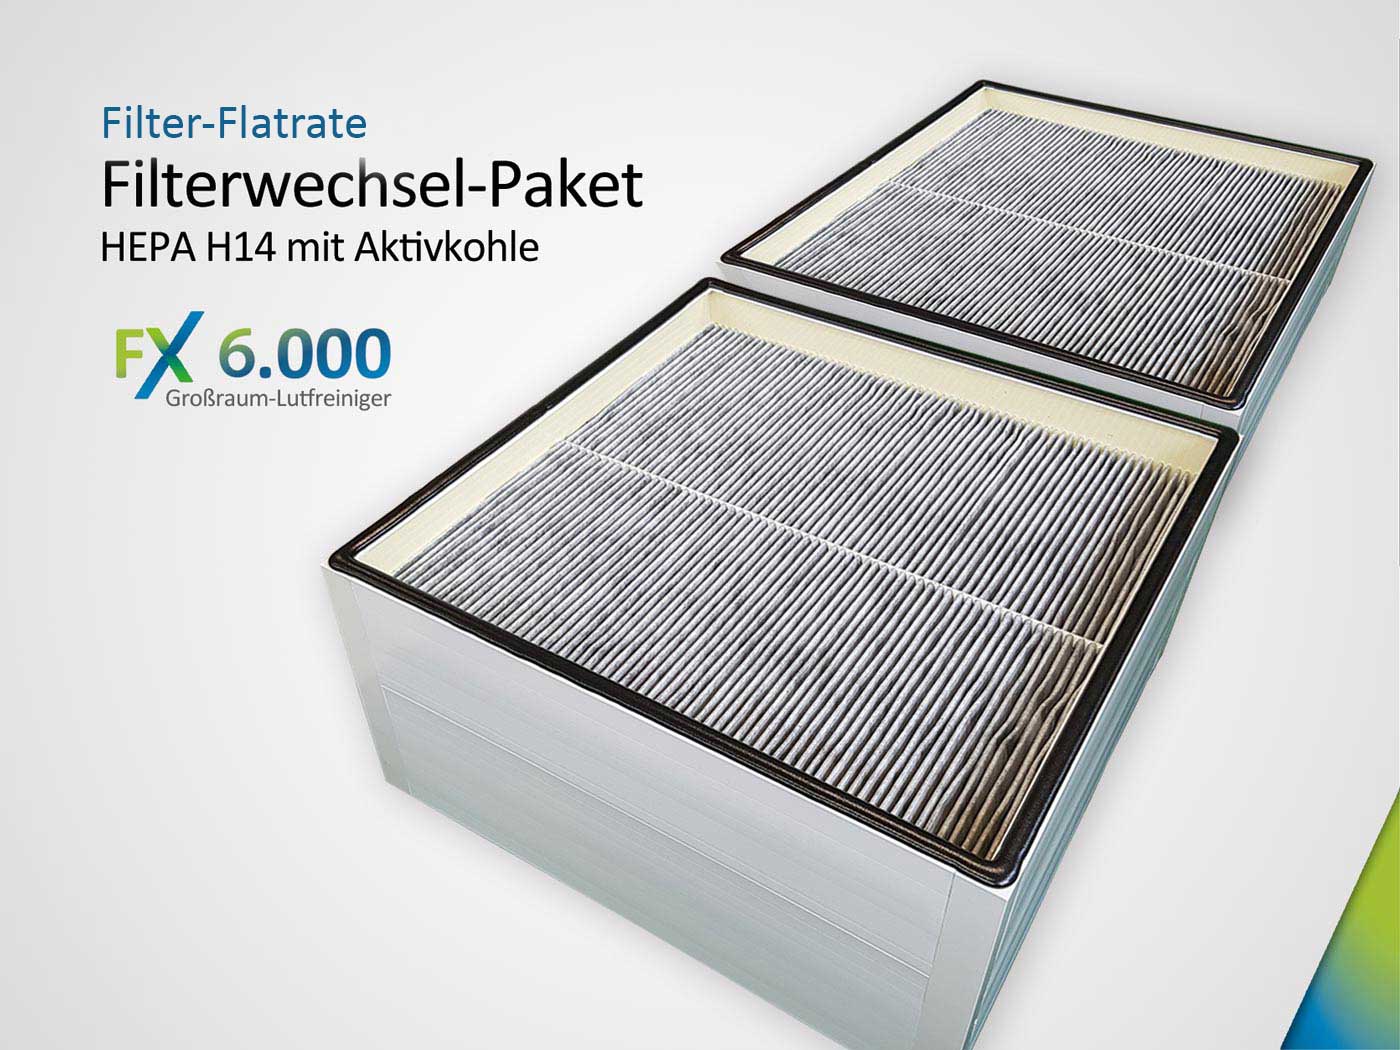 Filter-Flatrate  mit Filterwechsel-Paket FX6.000 (2 x Kombifilter HEPA H14 & Aktivkohle)